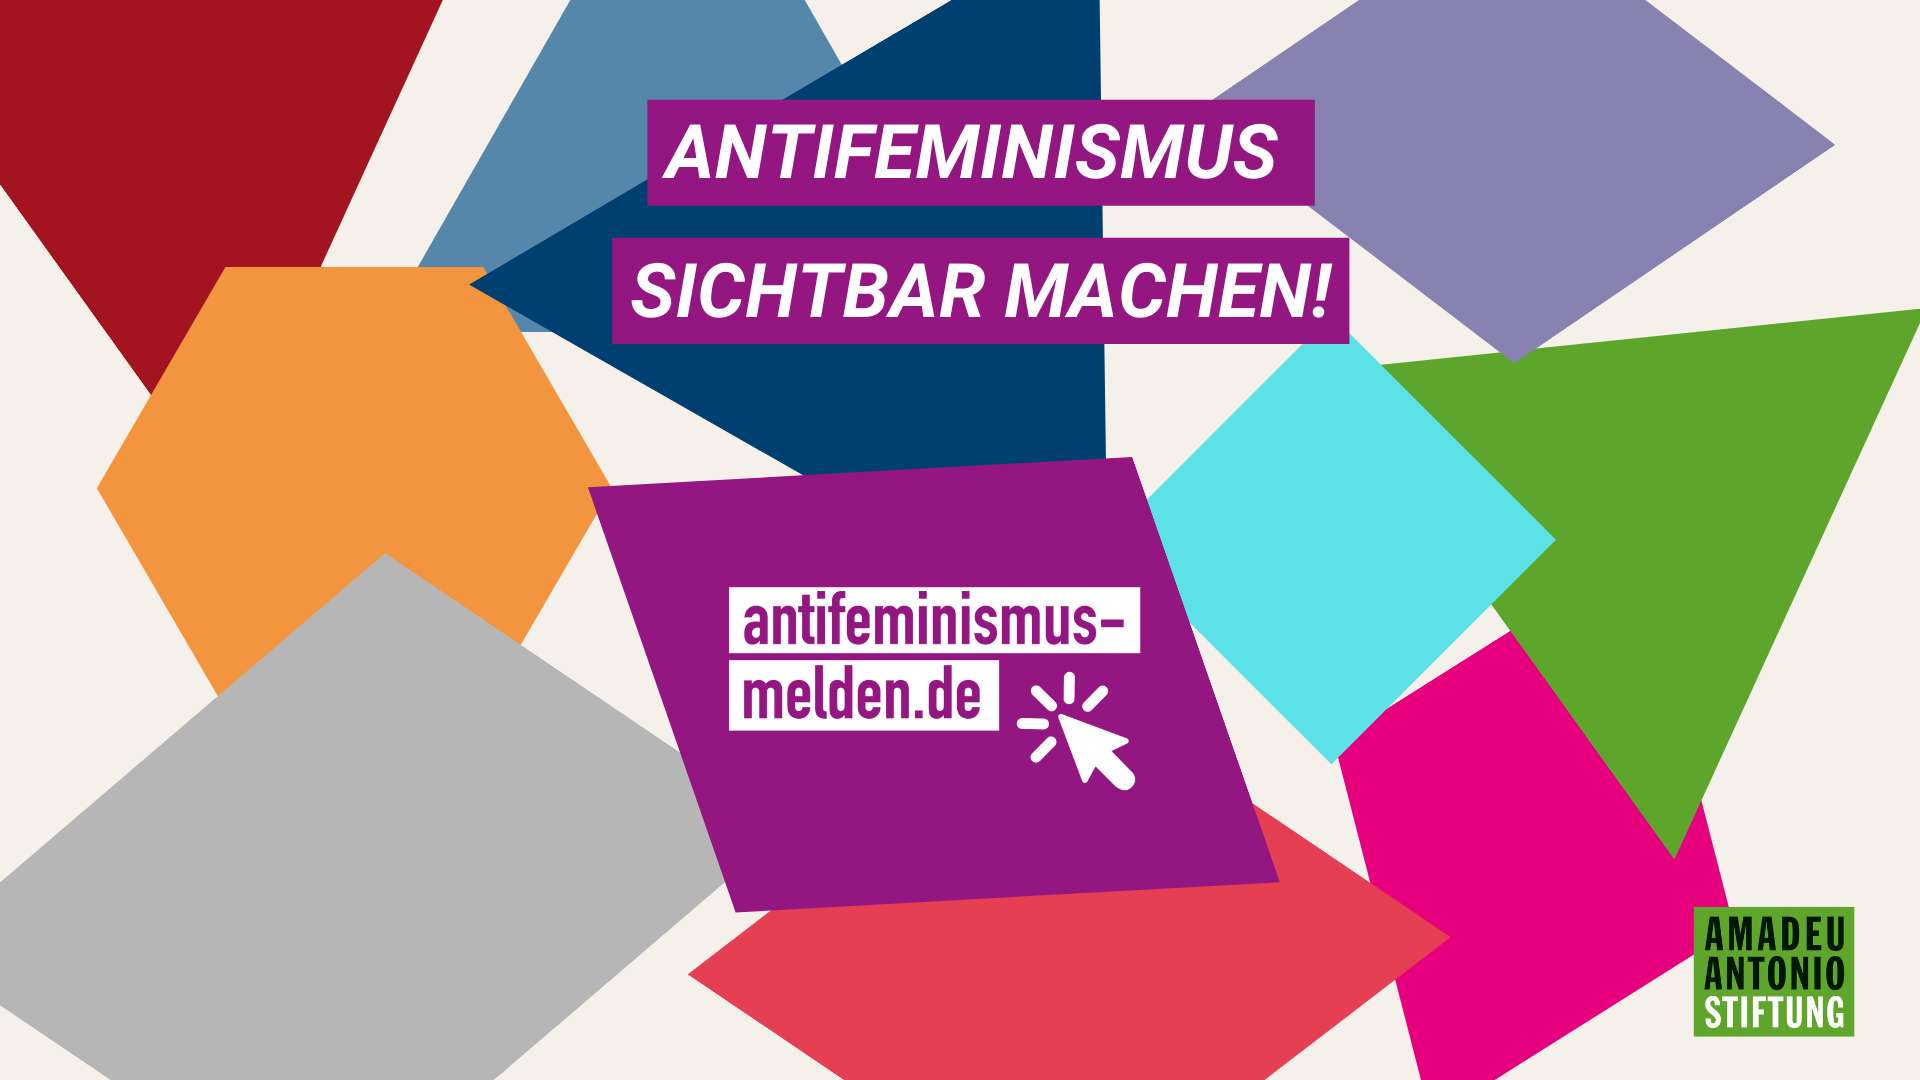 (c) Antifeminismus-melden.de